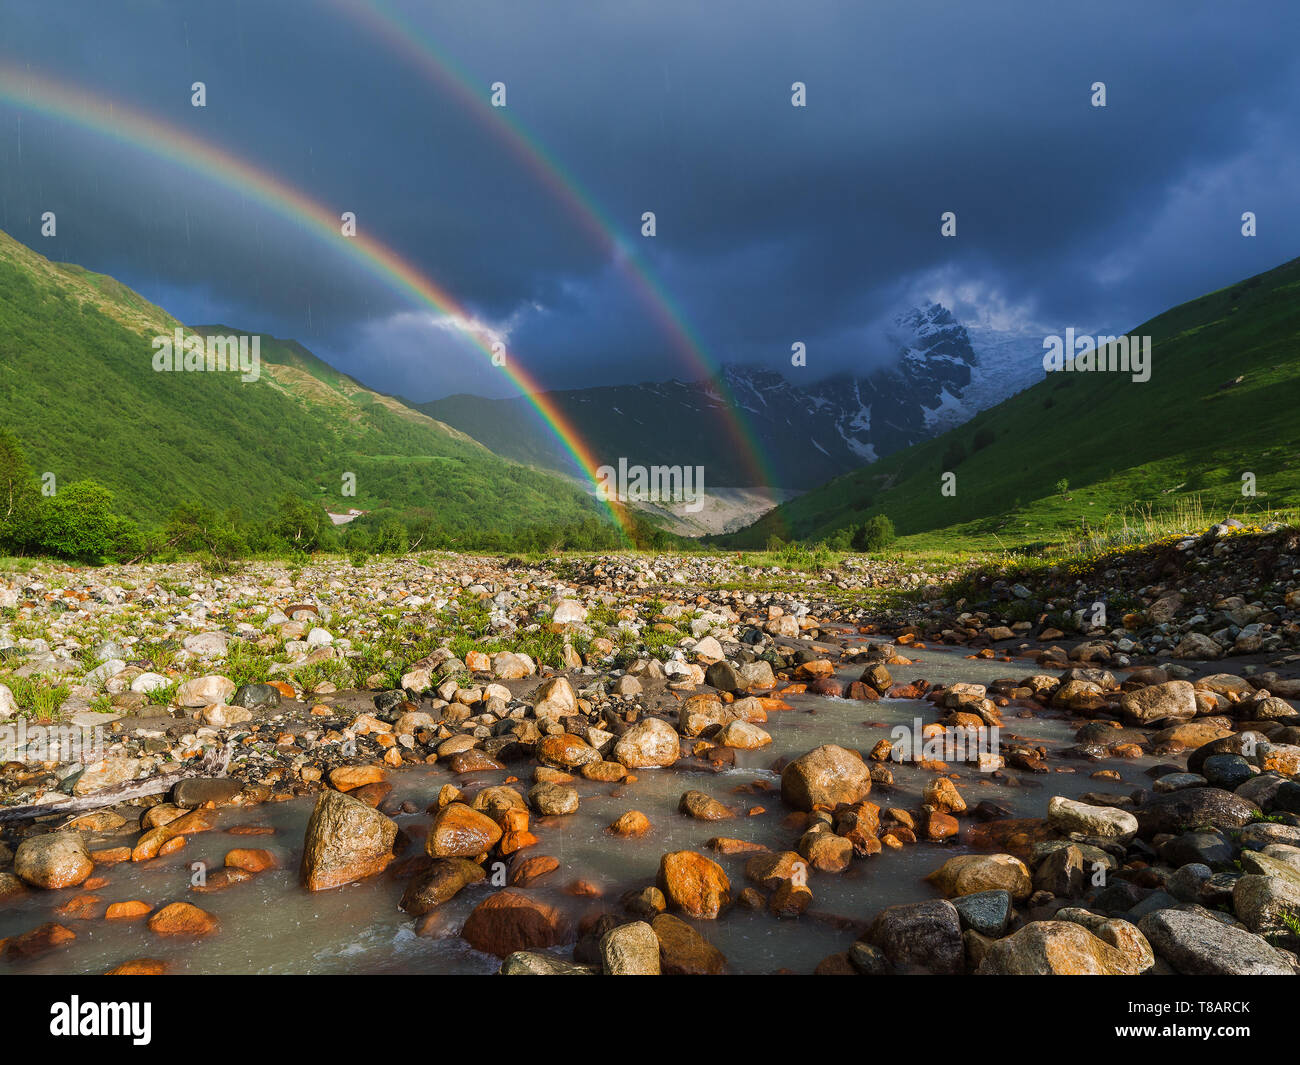 Rainbow in montagna. Paesaggio estivo con un fiume, colline e un cielo tempestoso. Pioggia in valle. Foto Stock